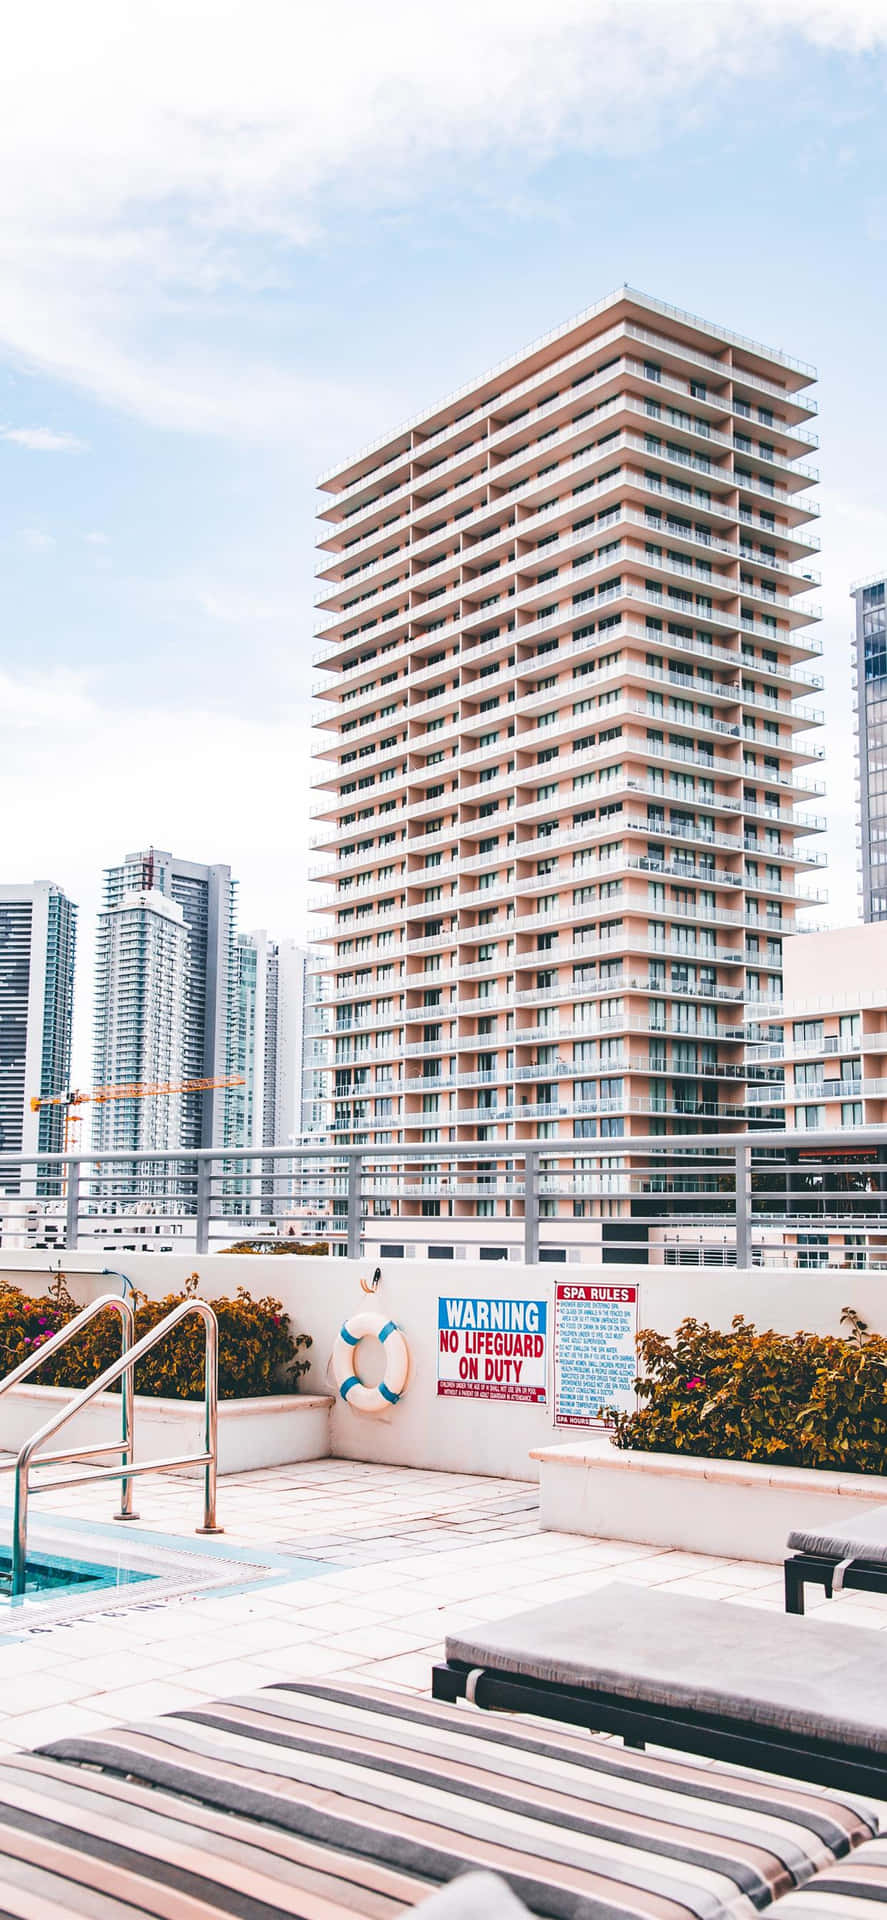 Eineunglaubliche Skyline Von Miami Aus Der Perspektive Eines Iphones Gesehen. Wallpaper